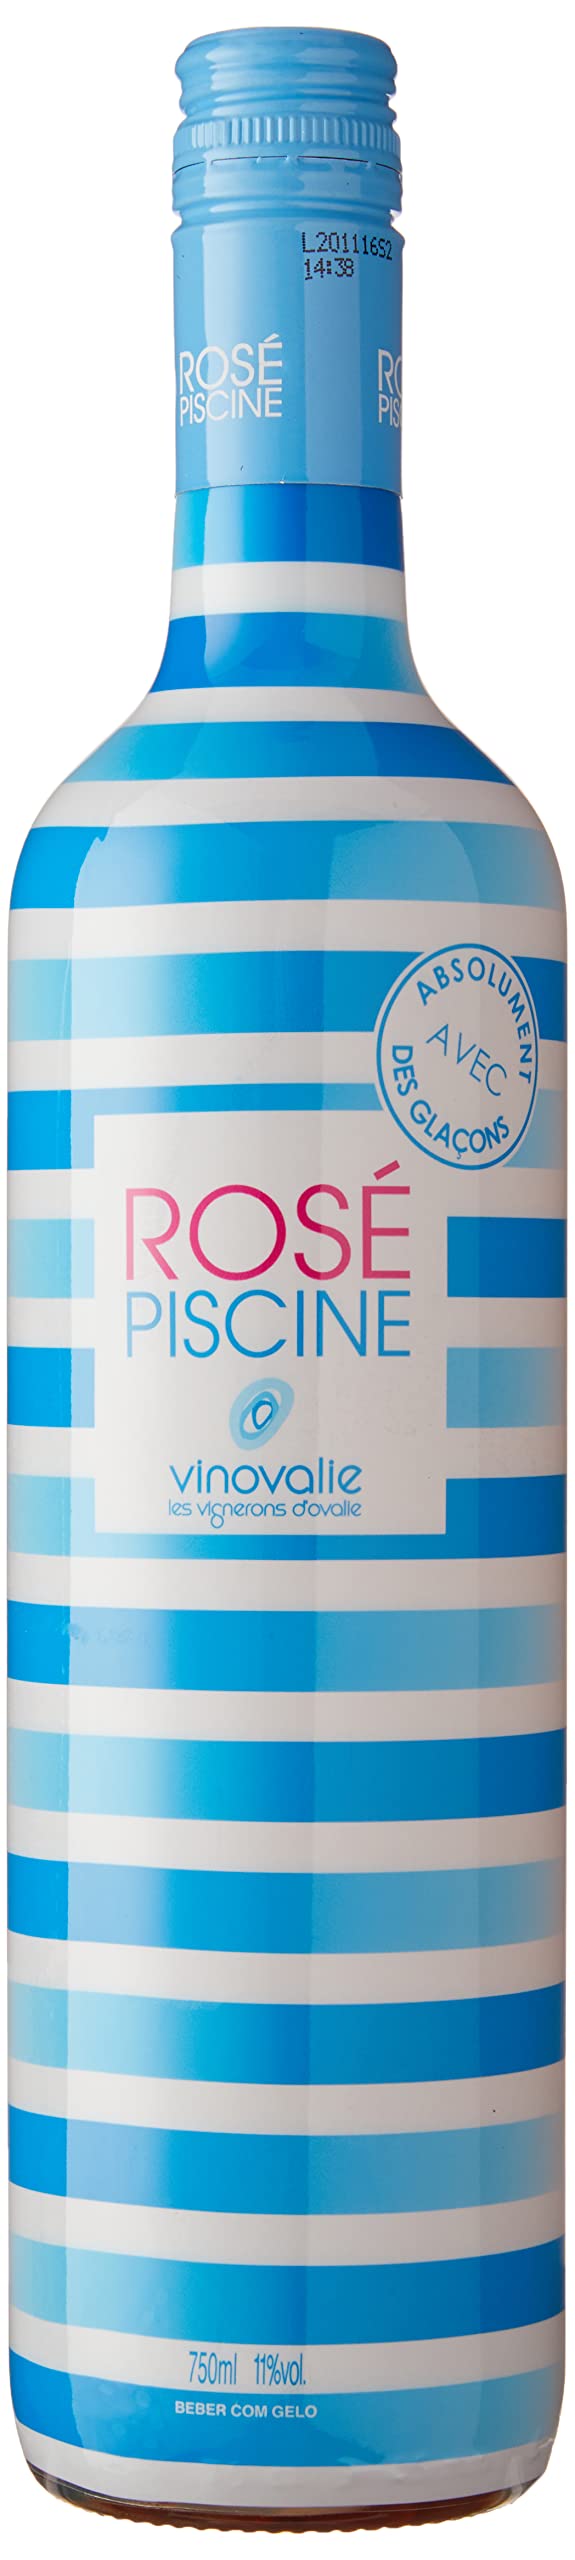 Vinho Rose Piscine Stripes Listras 750ml
